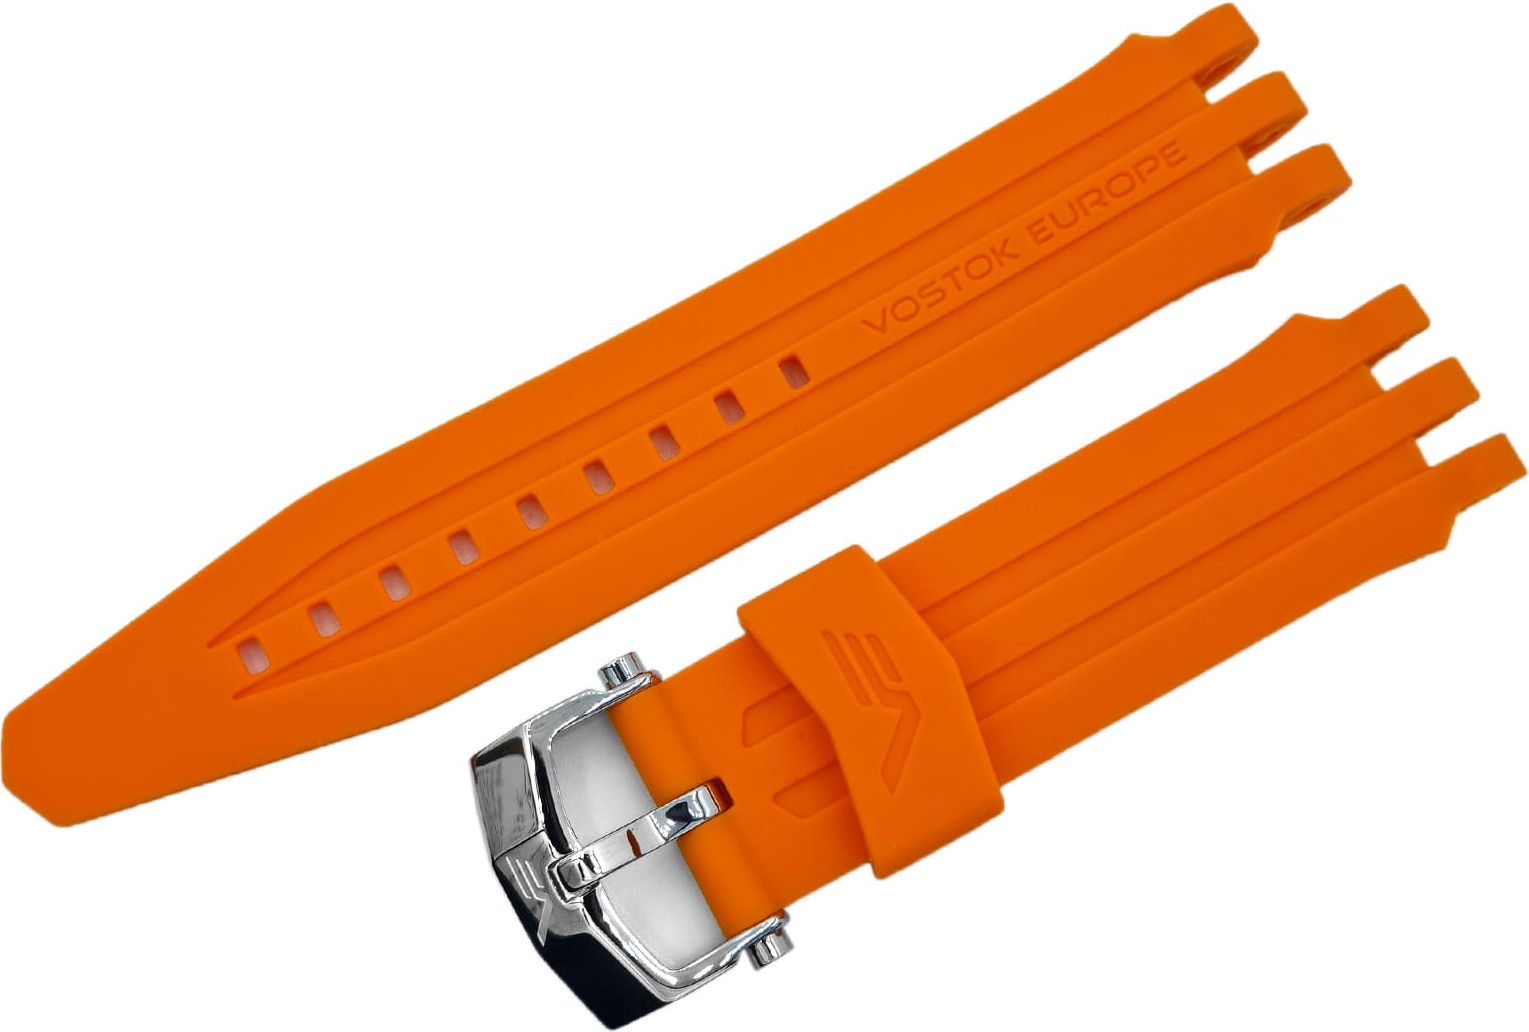   Rocket silicone bracelet / 26 mm / orange / clasp polished 